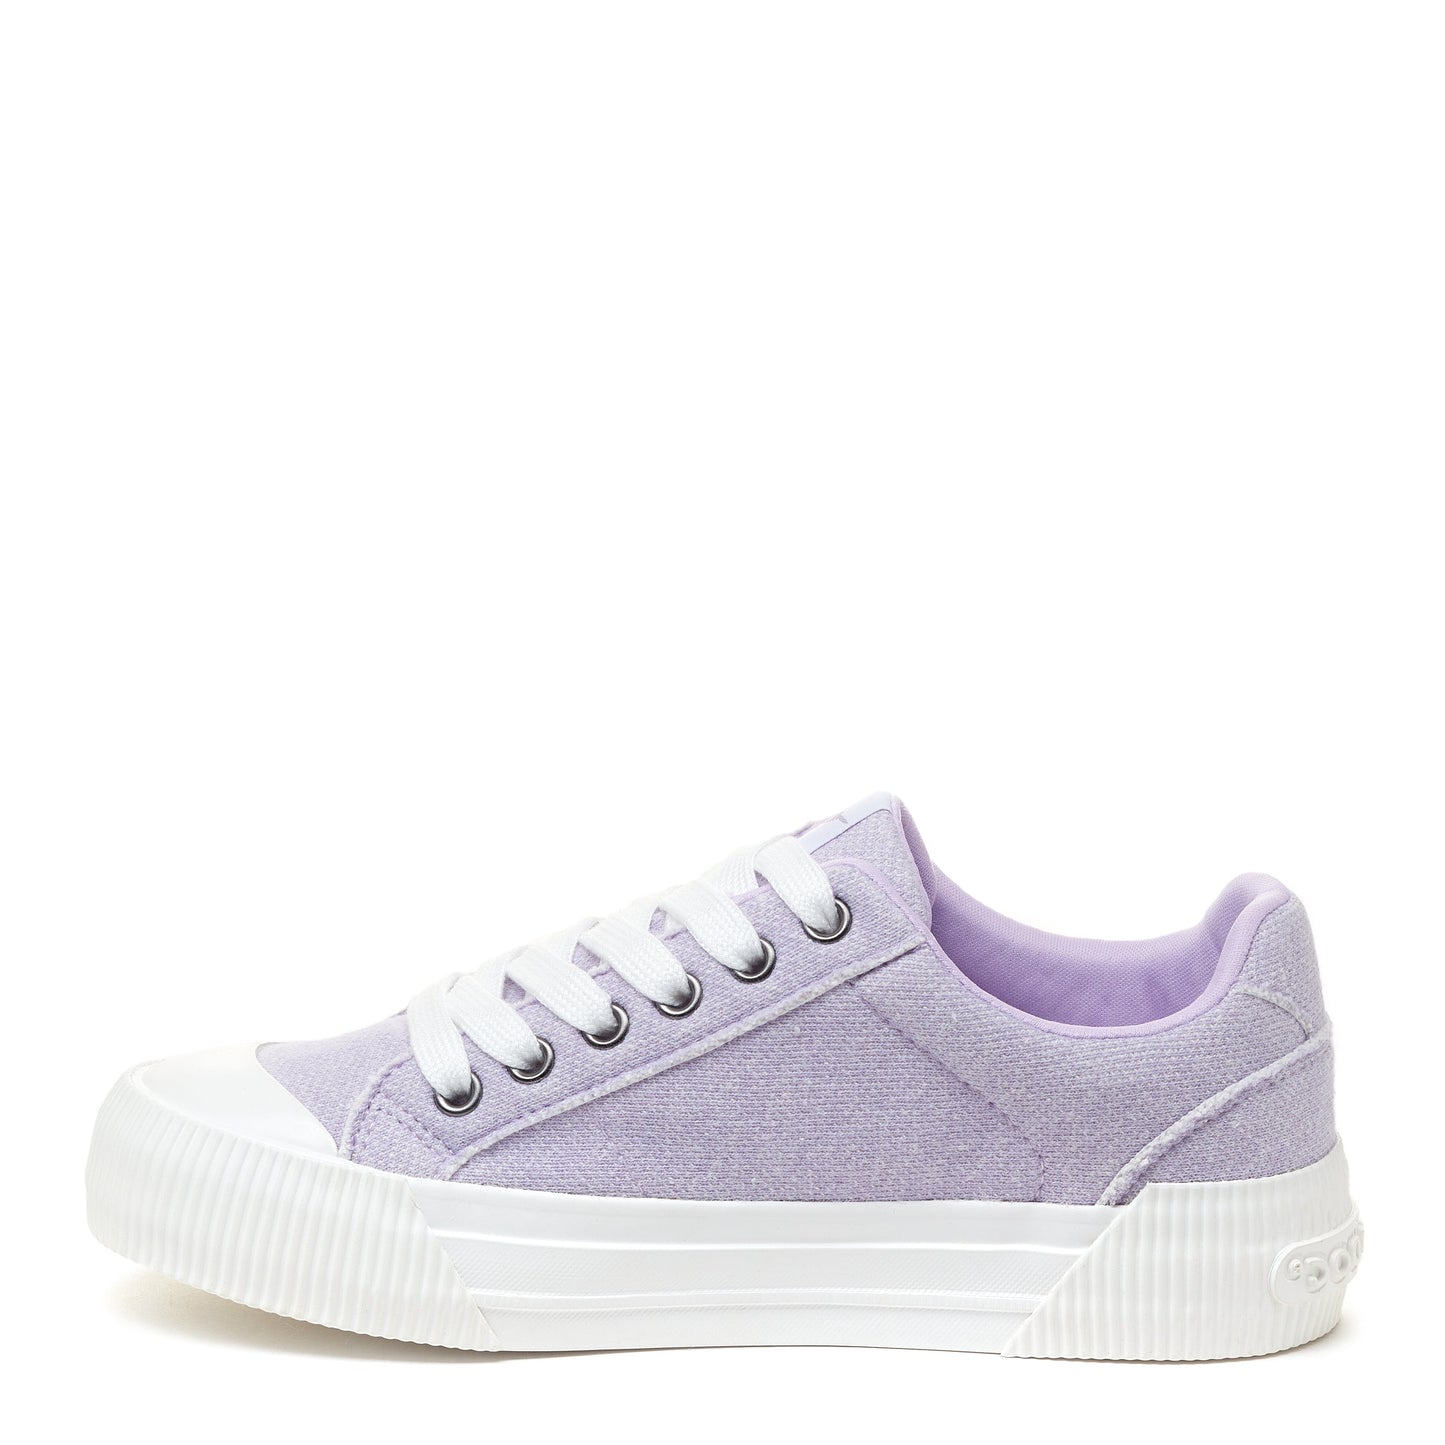 Rocket Dog® Women's Cheery Light Purple Sneaker